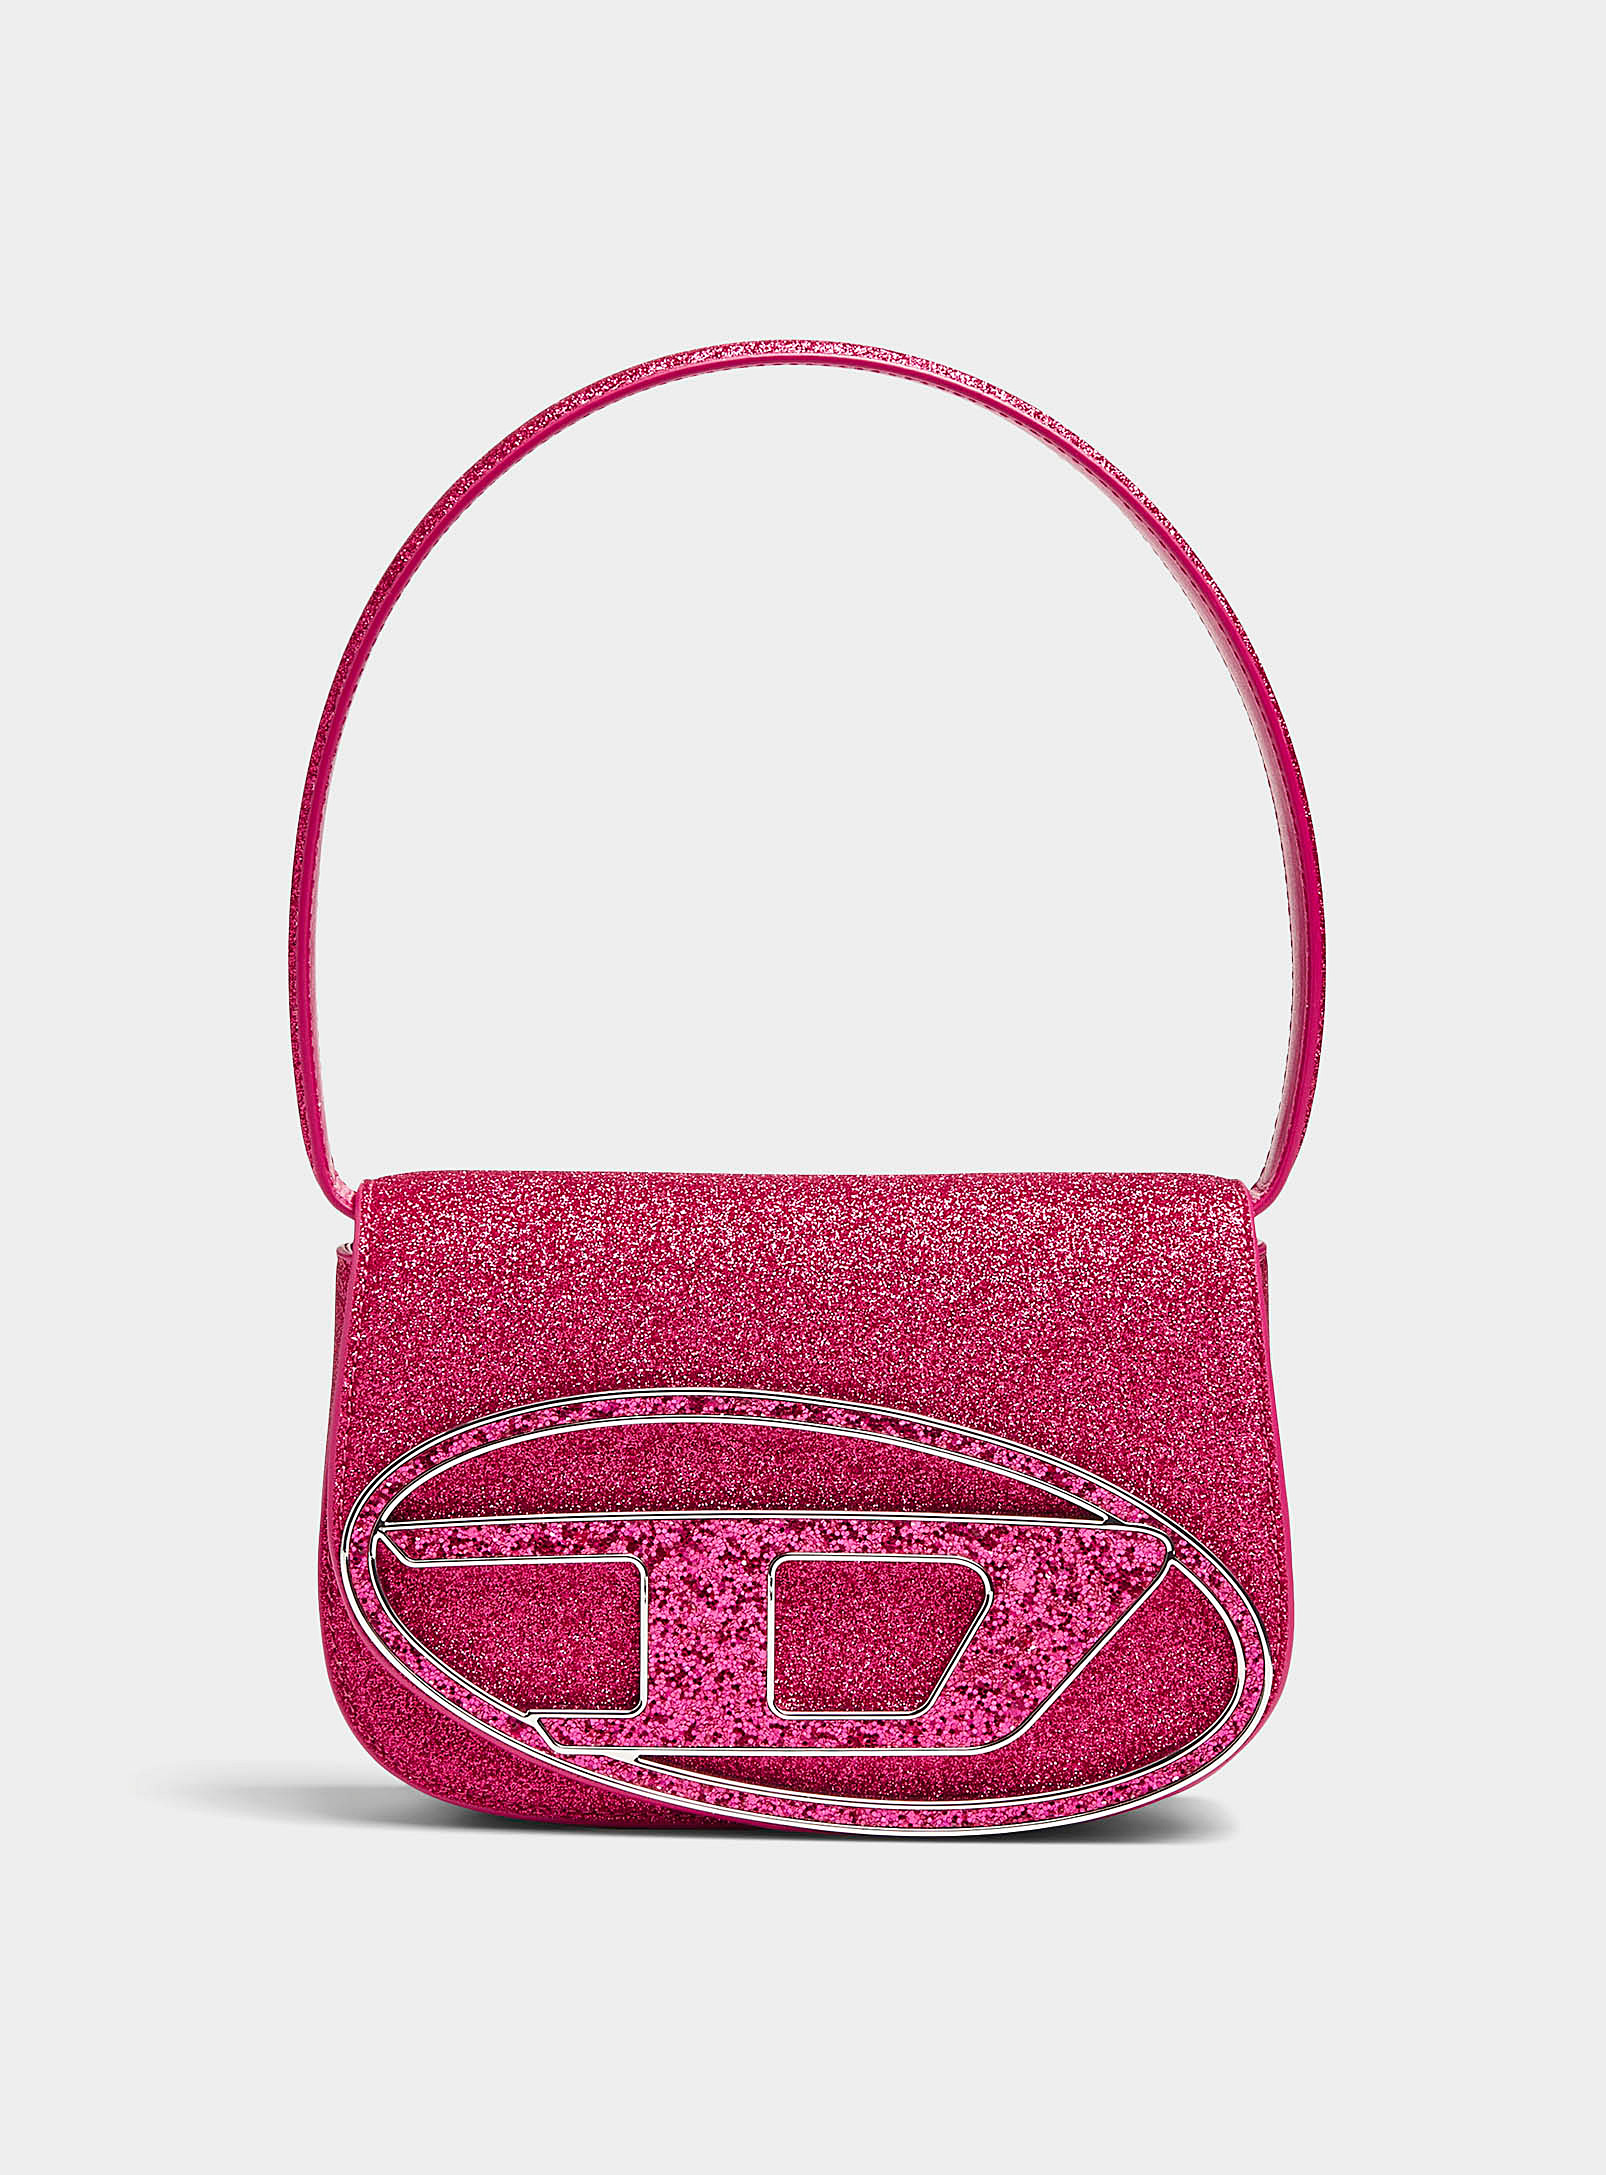 Diesel - Women's Sequins 1DR handbag